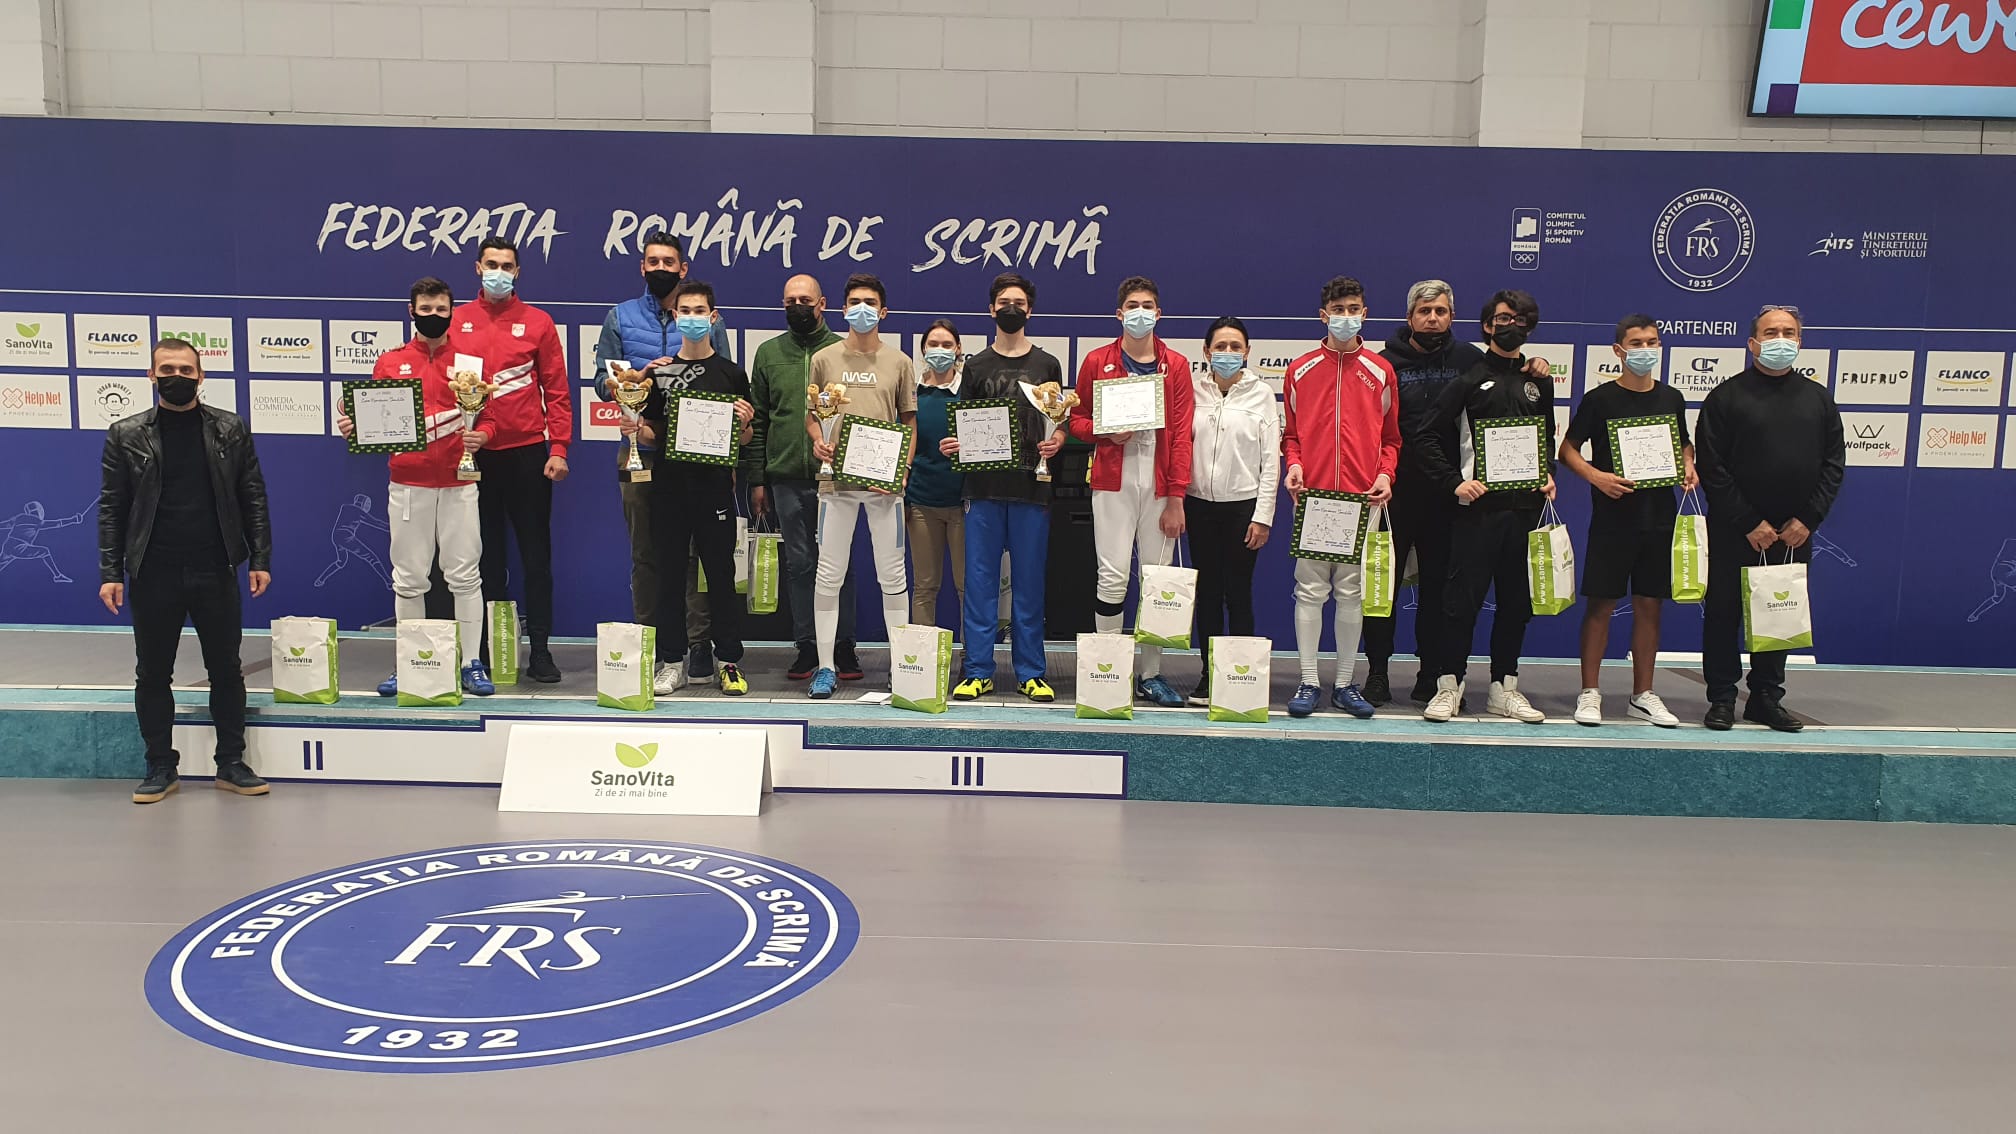 Dacian Enache a câștigat Cupa României SanoVita la sabie masculin U15!